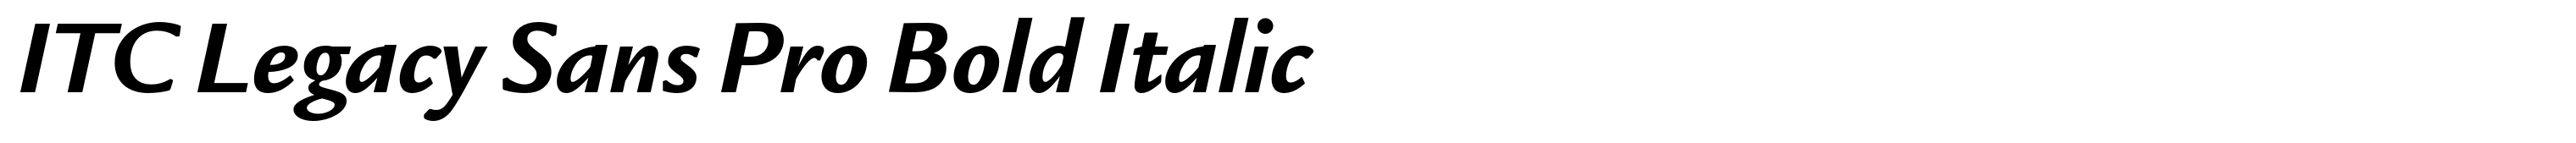 ITC Legacy Sans Pro Bold Italic